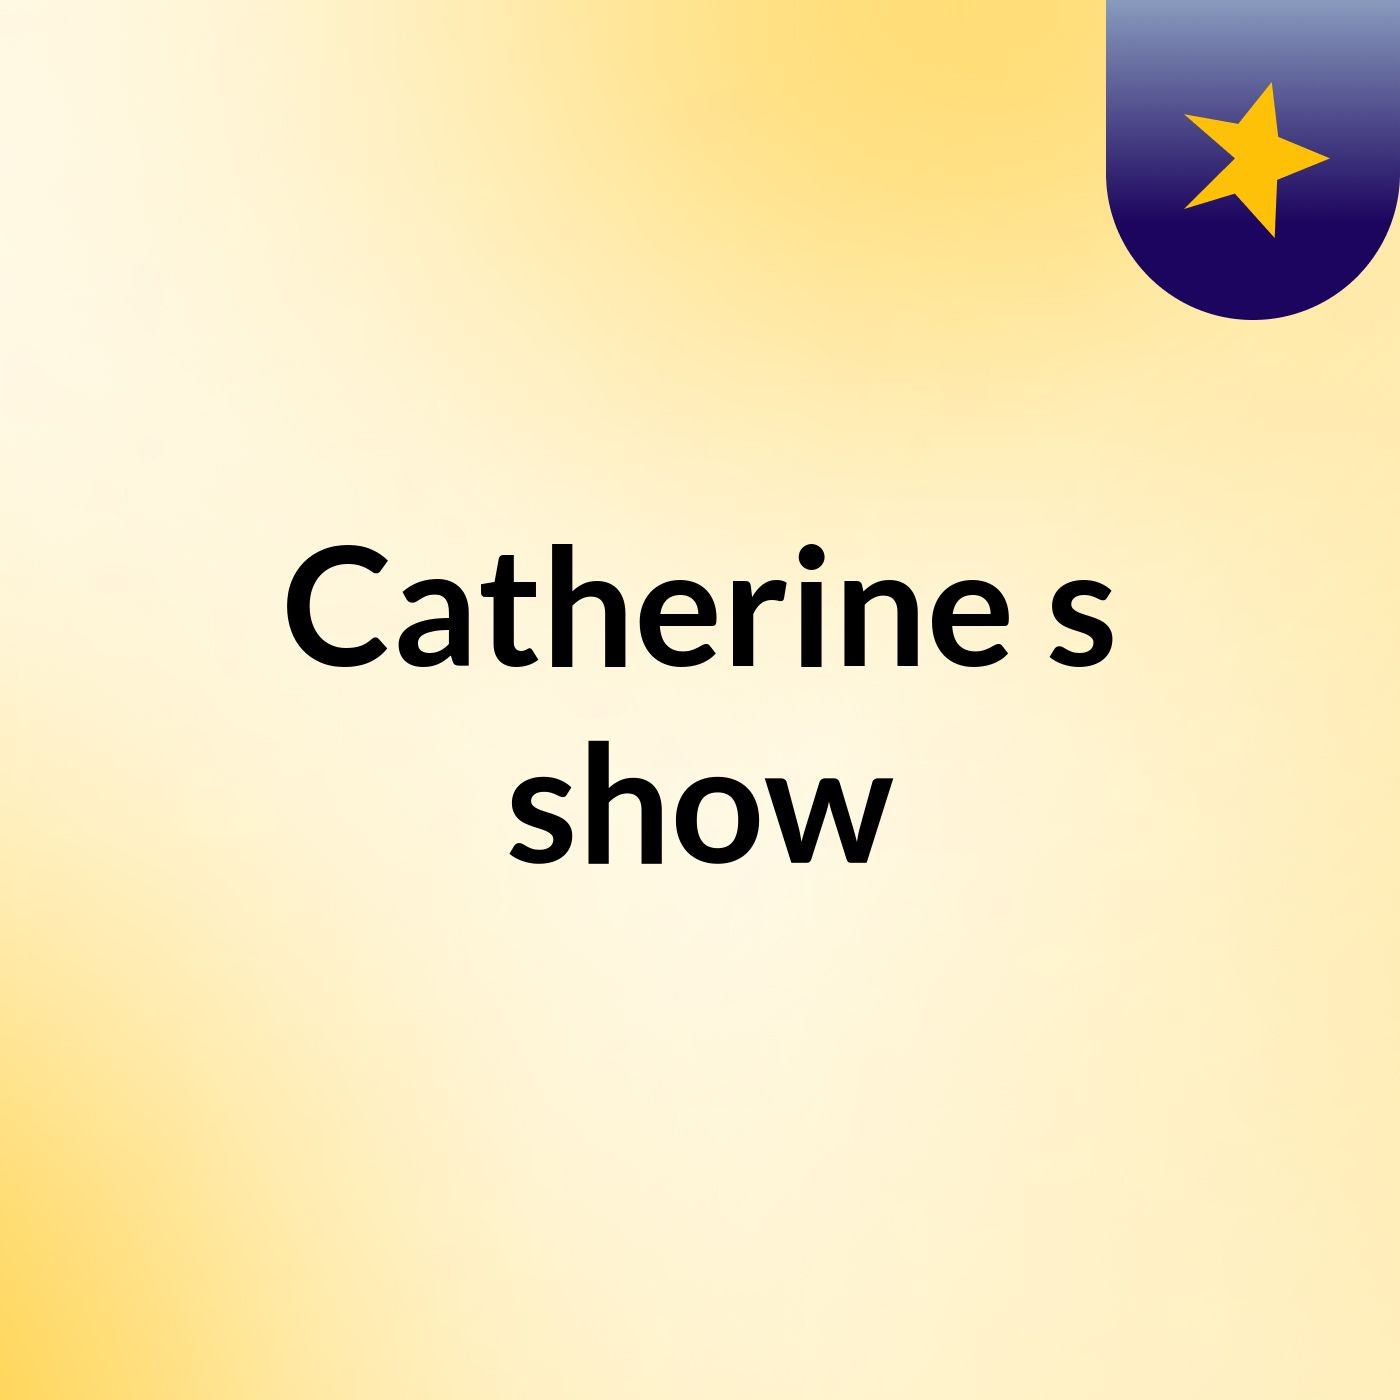 Catherine's show